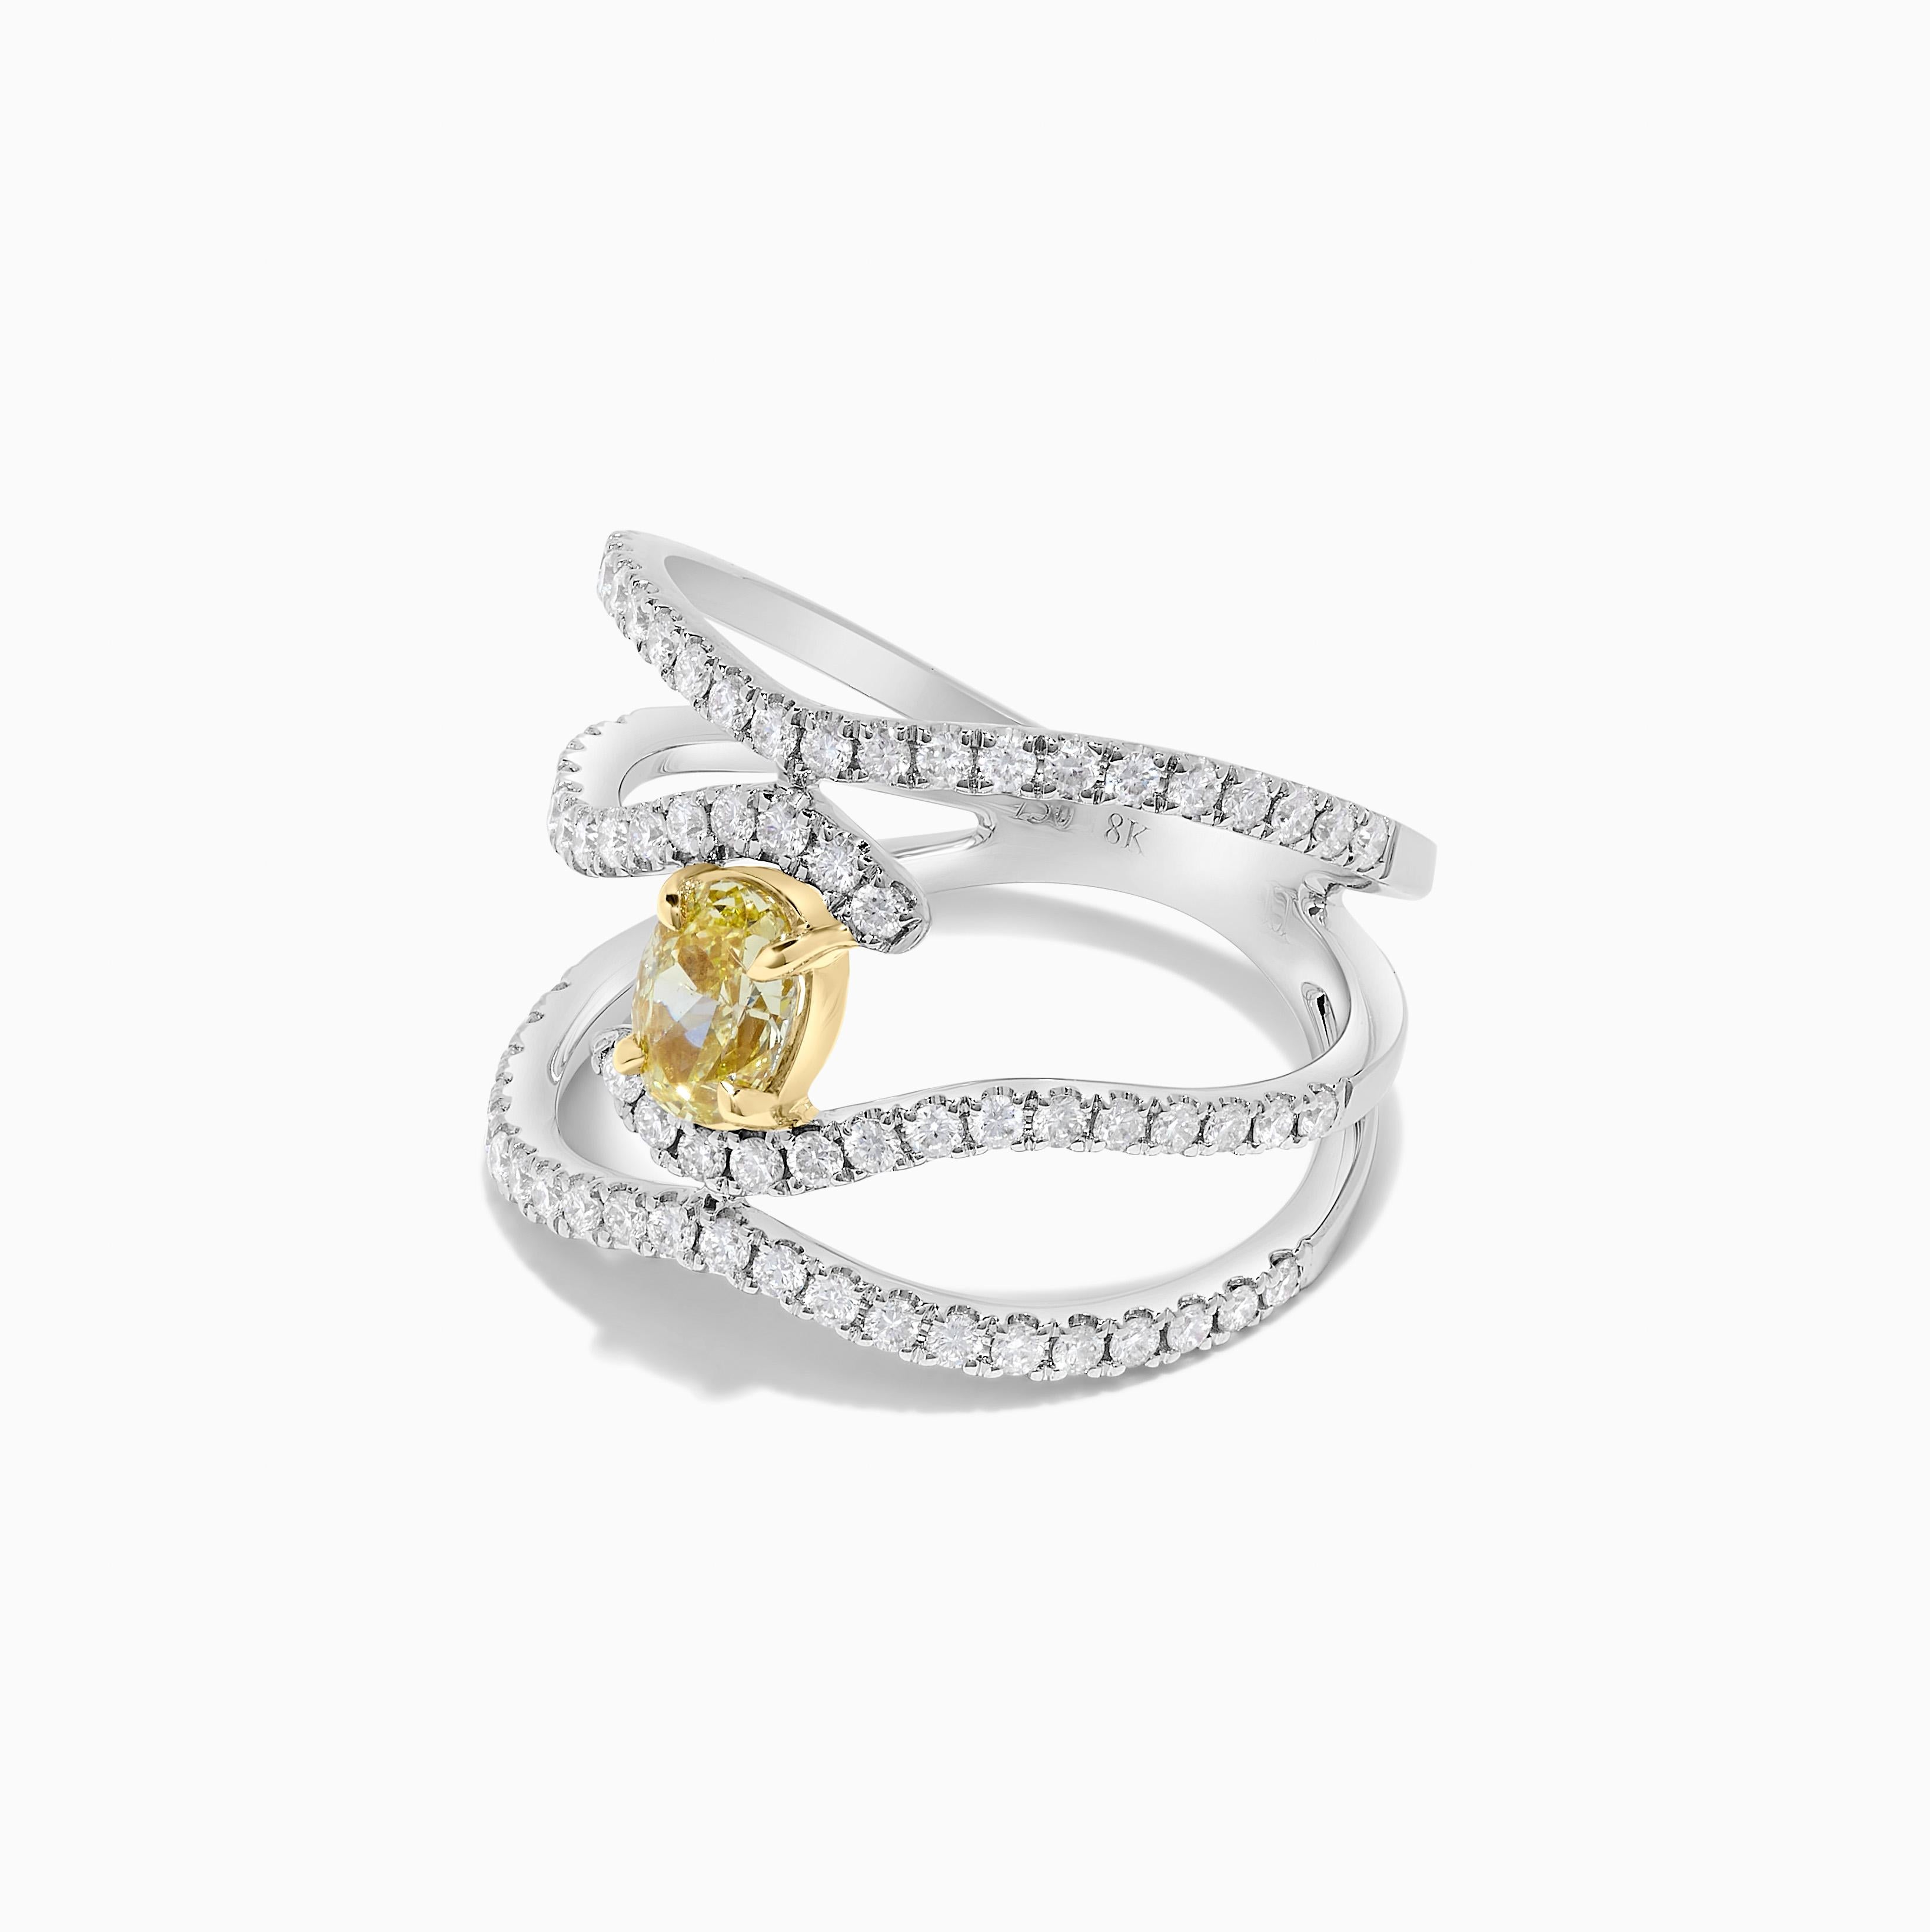 Der klassische GIA-zertifizierte Diamantring von RareGemWorld. Montiert in einer schönen Fassung aus 18K Gelb- und Weißgold mit einem natürlichen gelben Diamanten im Ovalschliff. Der gelbe Diamant ist von kleinen runden weißen Naturdiamanten